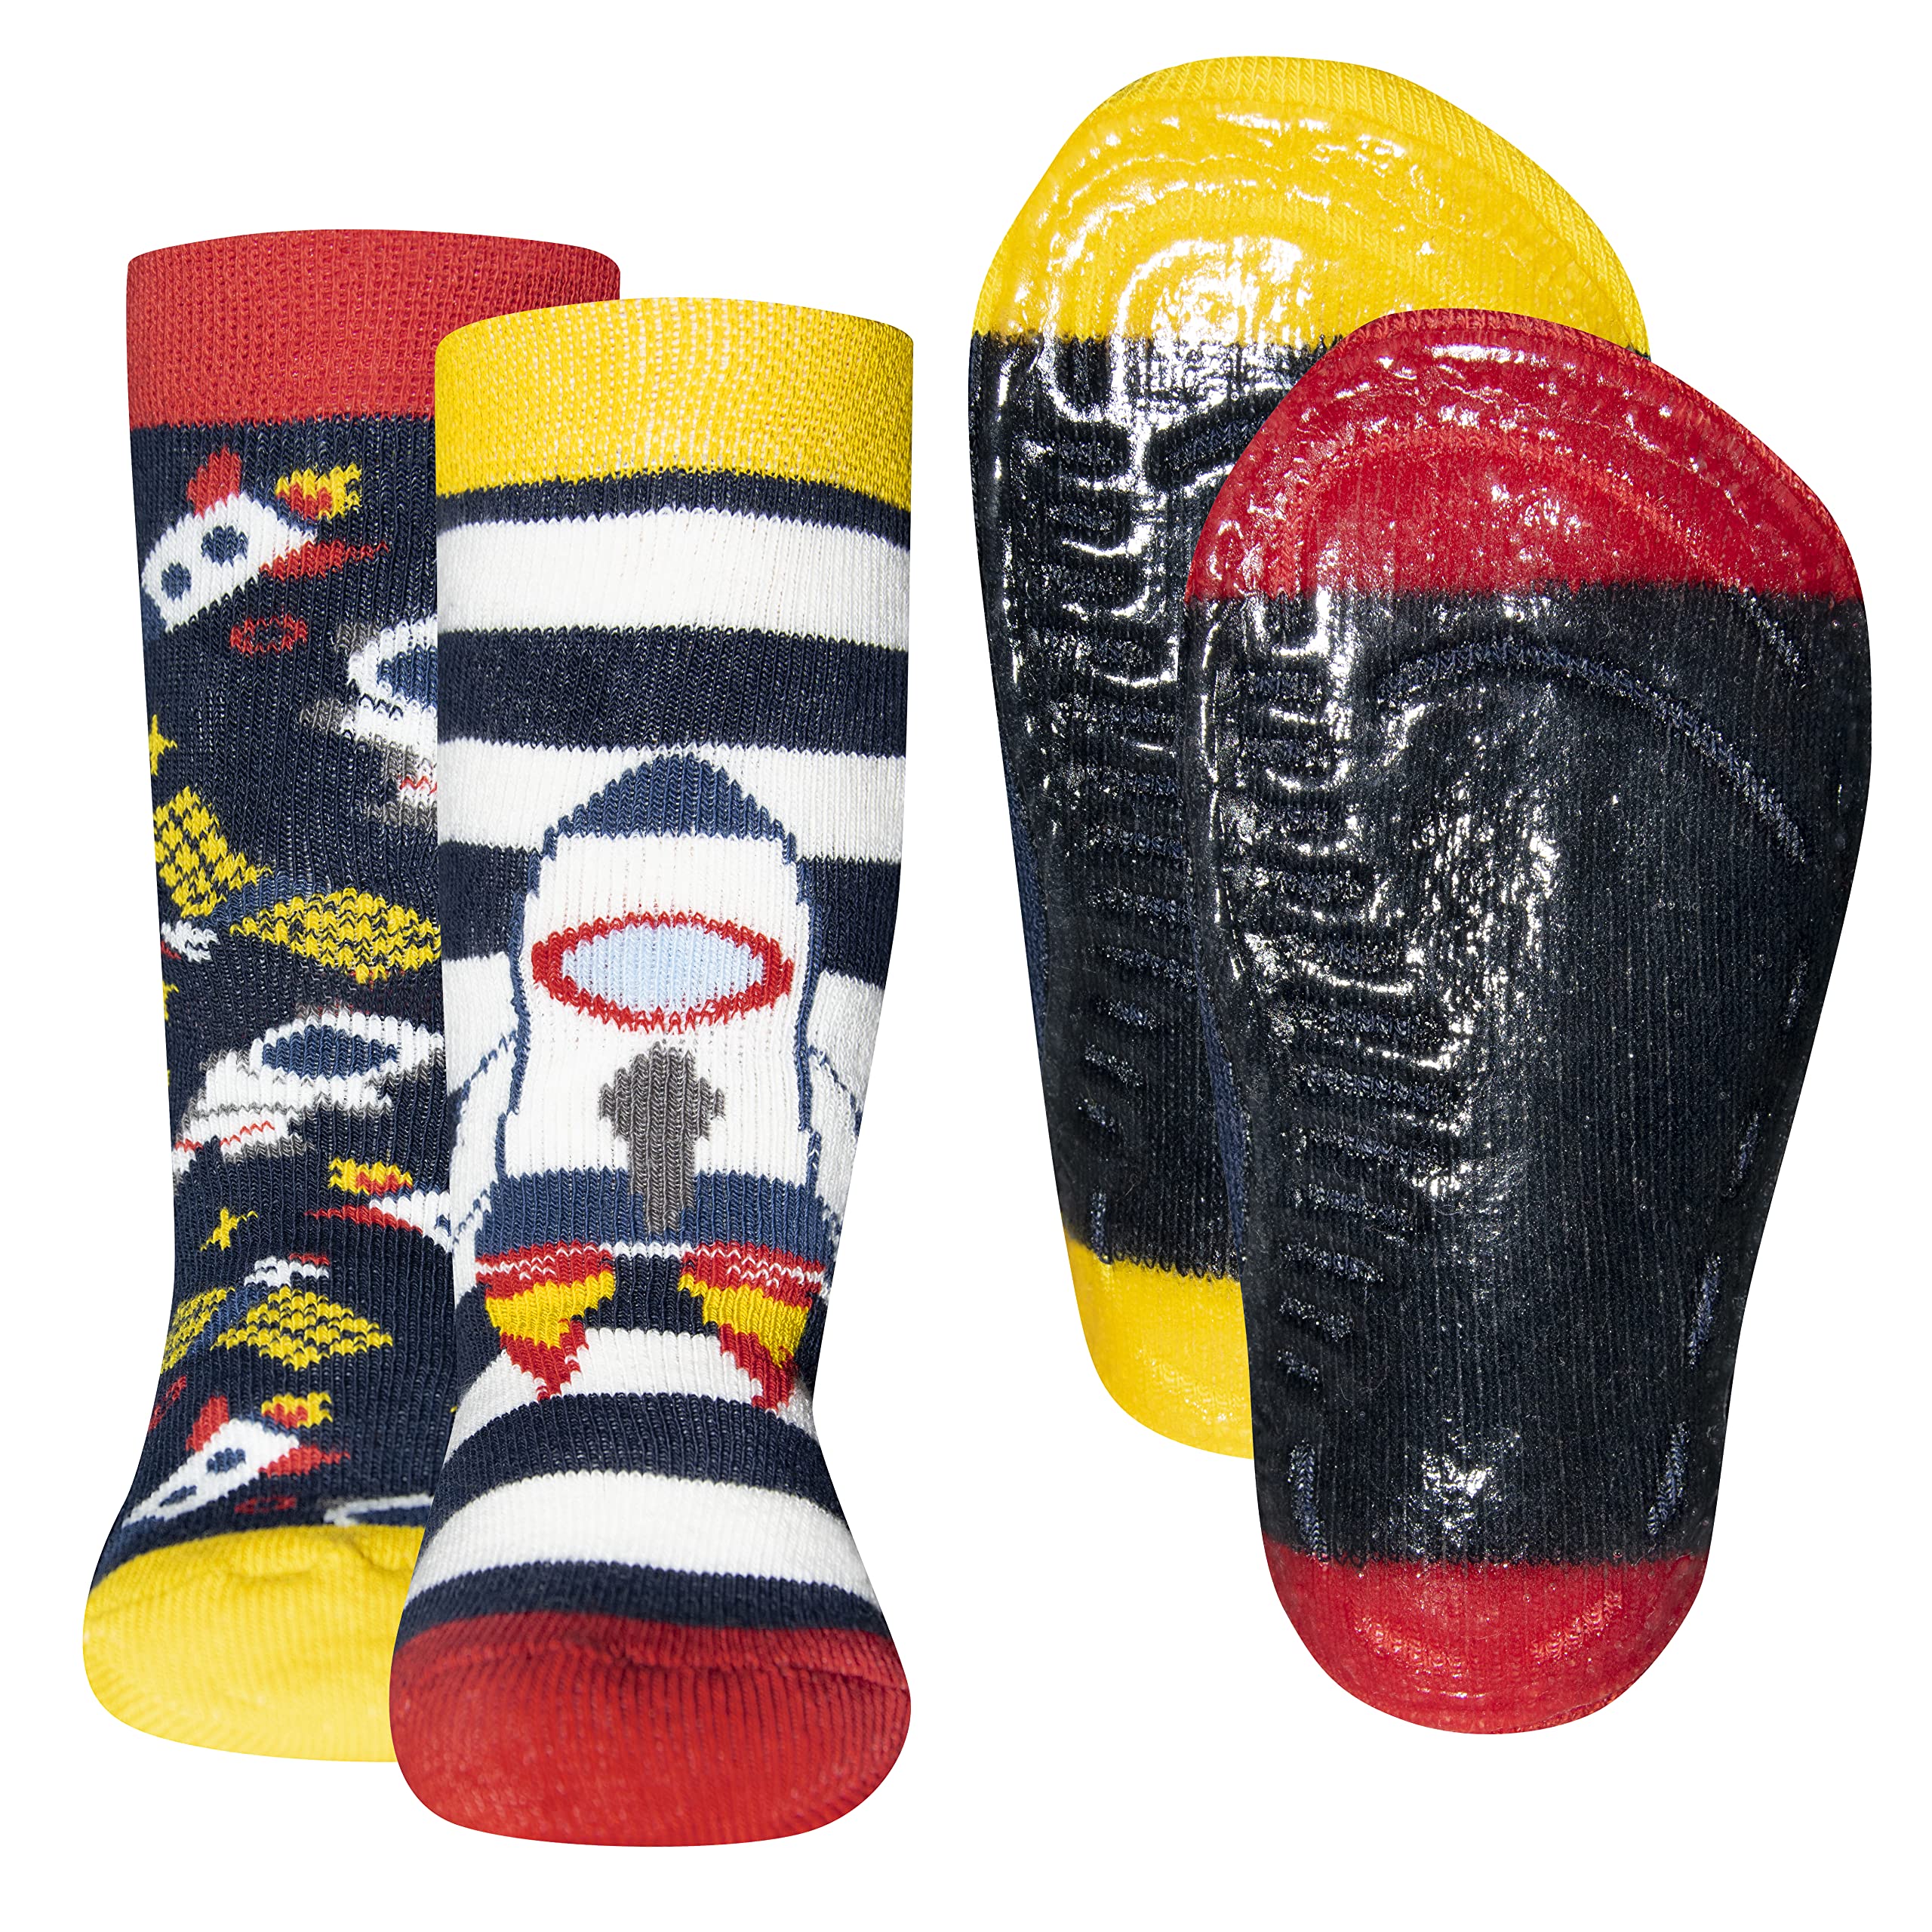 EWERS 2er-Pack Rakete Astronaut Stoppersocken SoftStep, Socken mit Antirutschsohle für Jungen, Anti-Rutsch-Socken mit Gummisohle, 2 Paar rutschfeste Kindersocken für Jungs, Größe 27-28